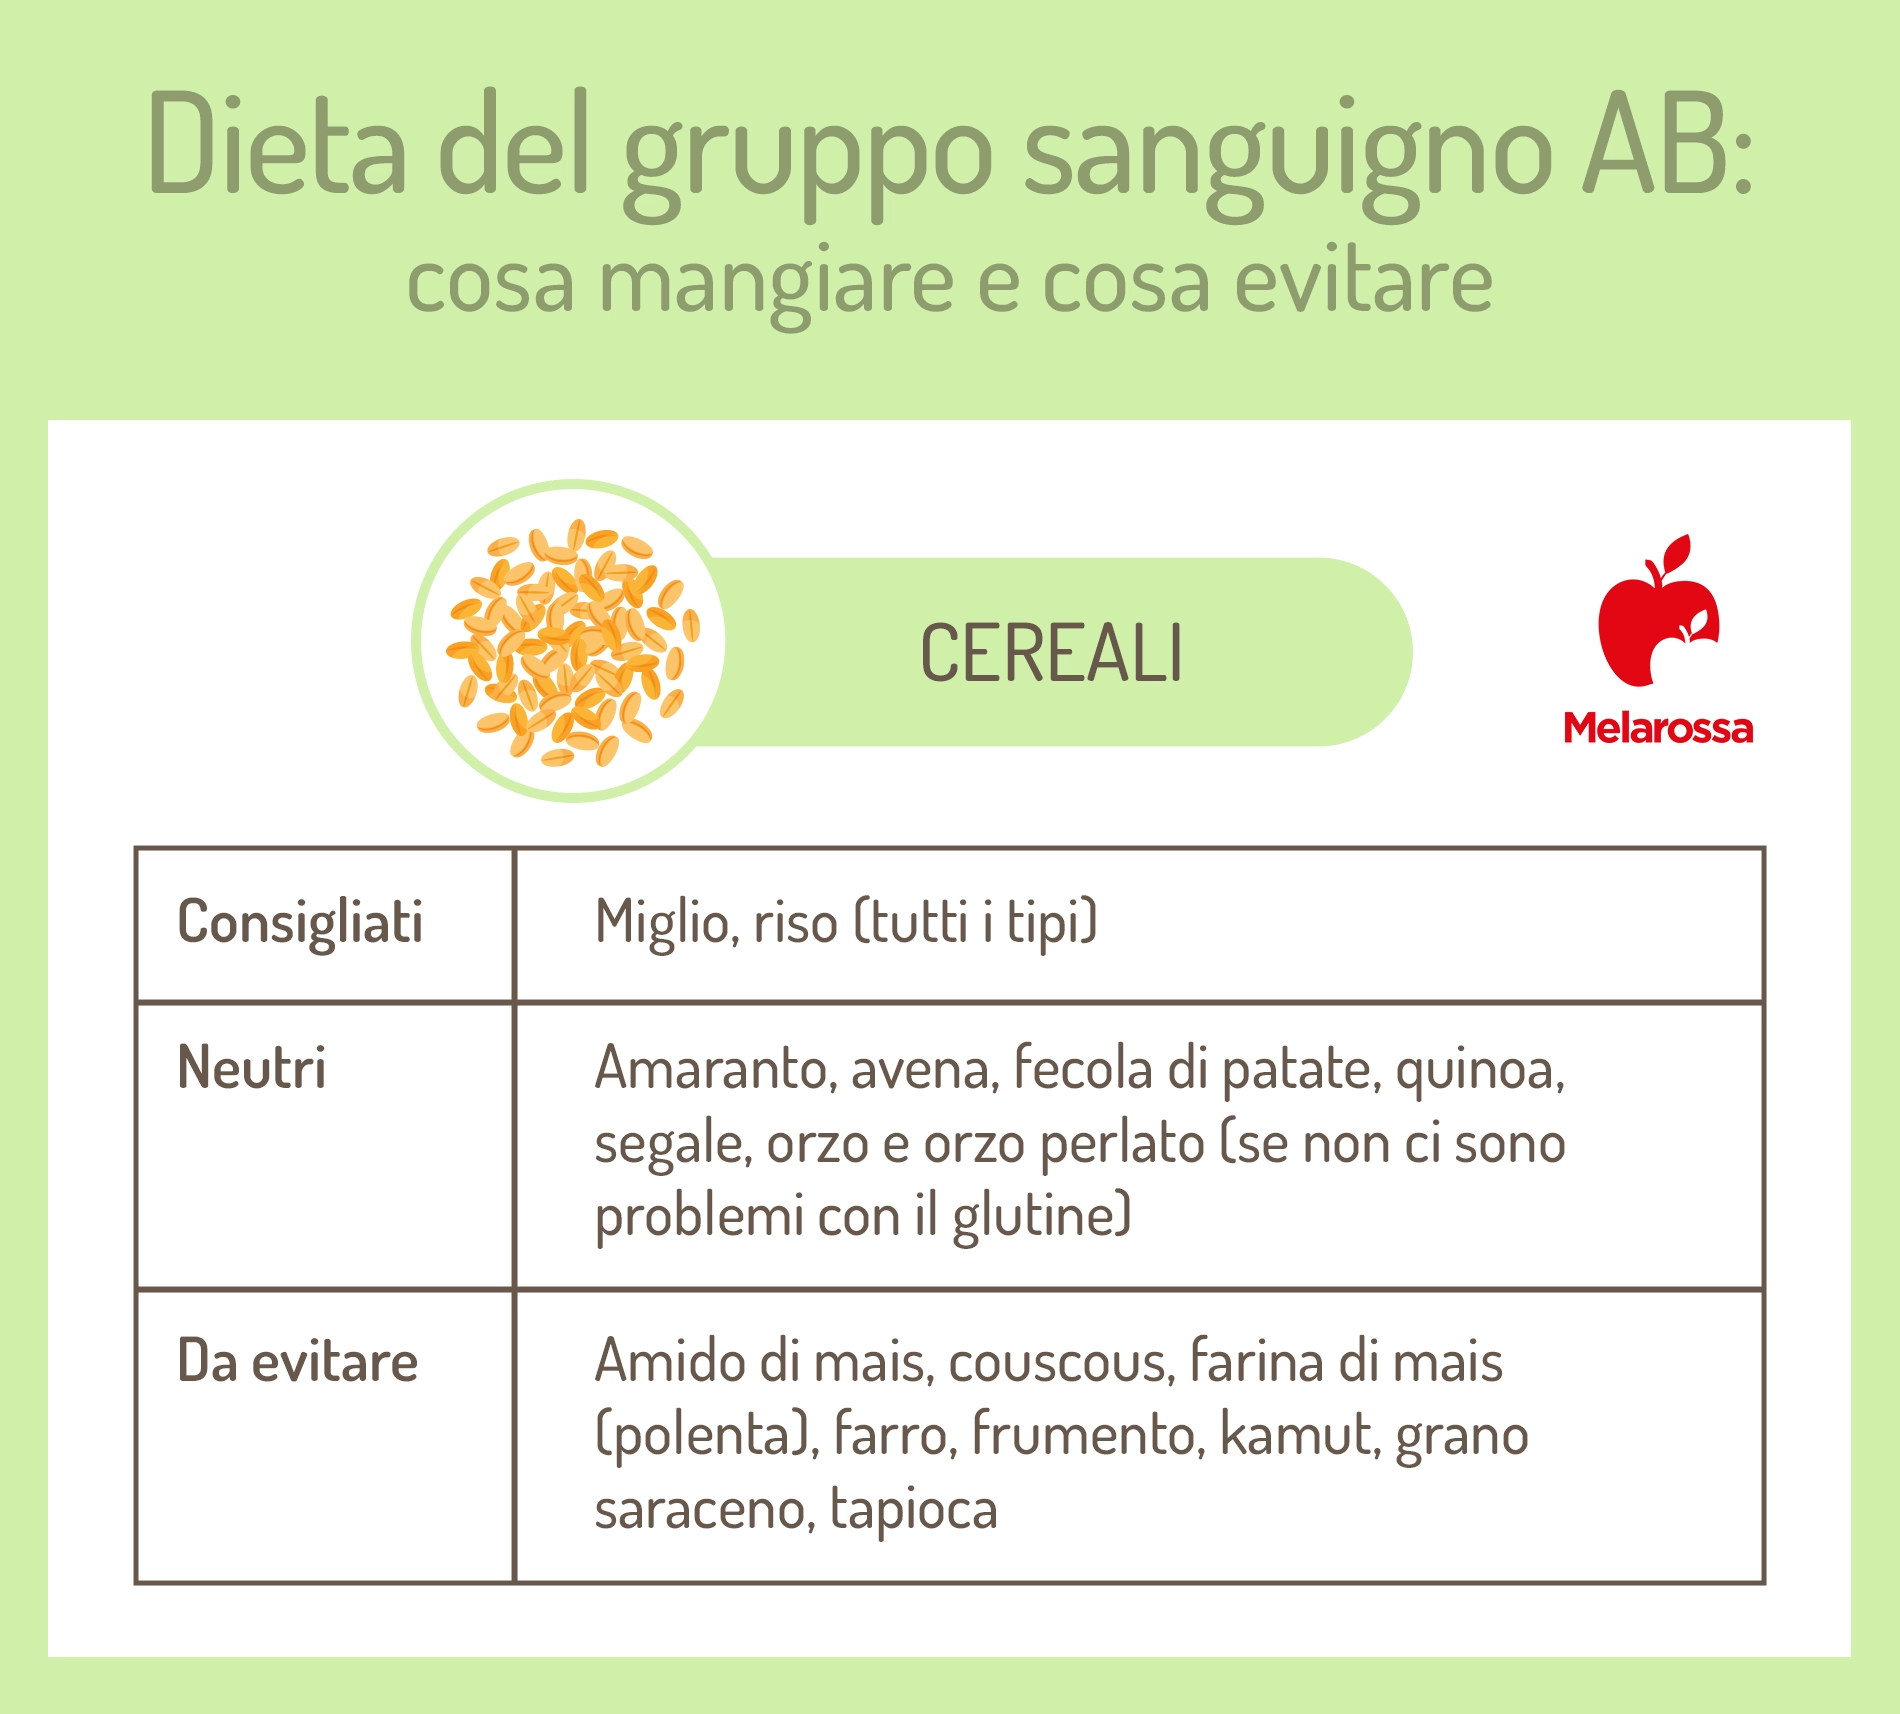 dieta del gruppo sanguigno AB: cereali